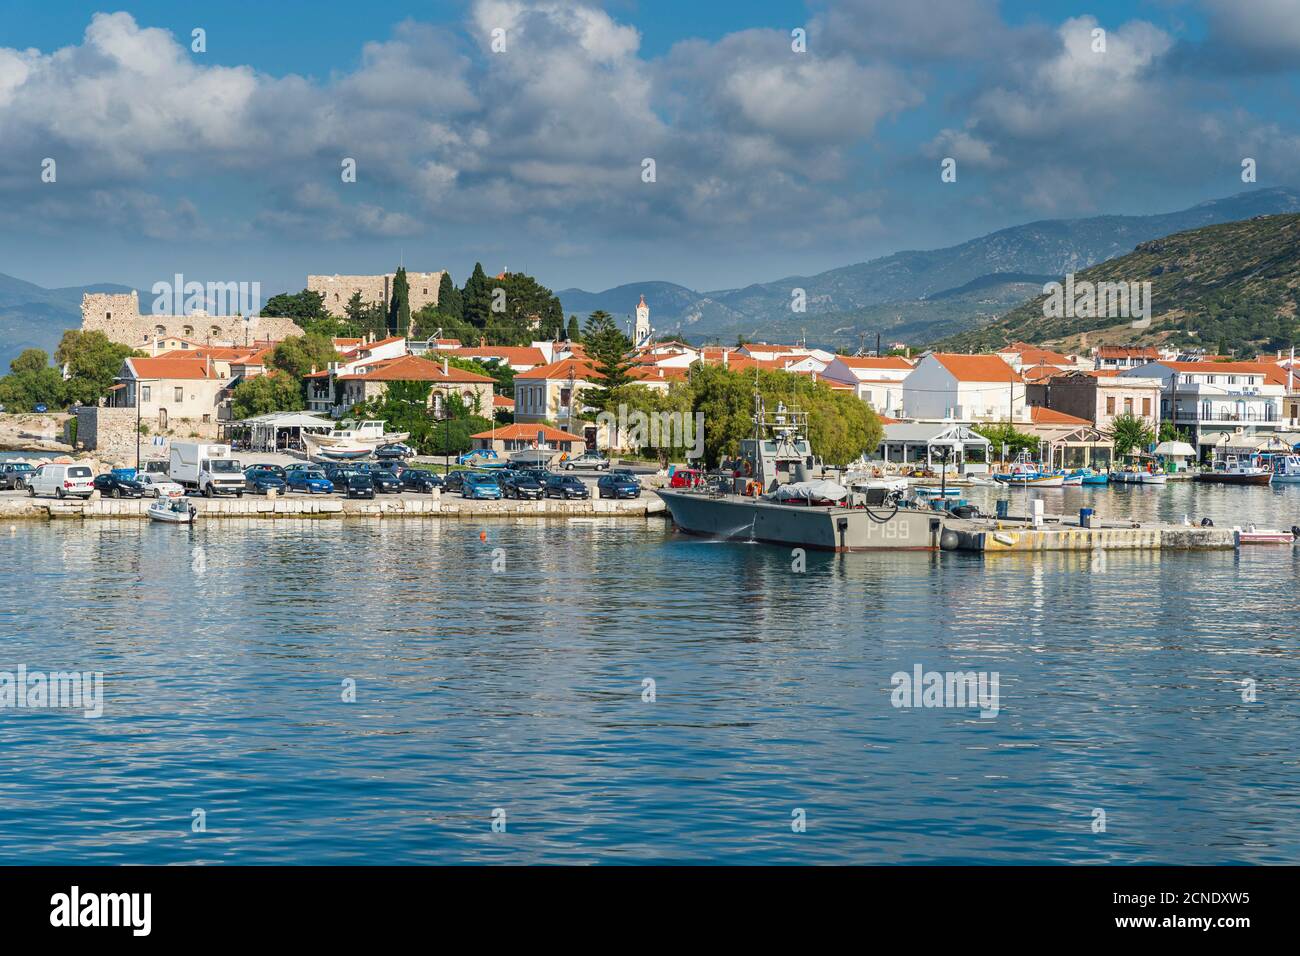 Le port de Phytagoteio, Samos, les îles grecques, la Grèce, l'Europe Banque D'Images